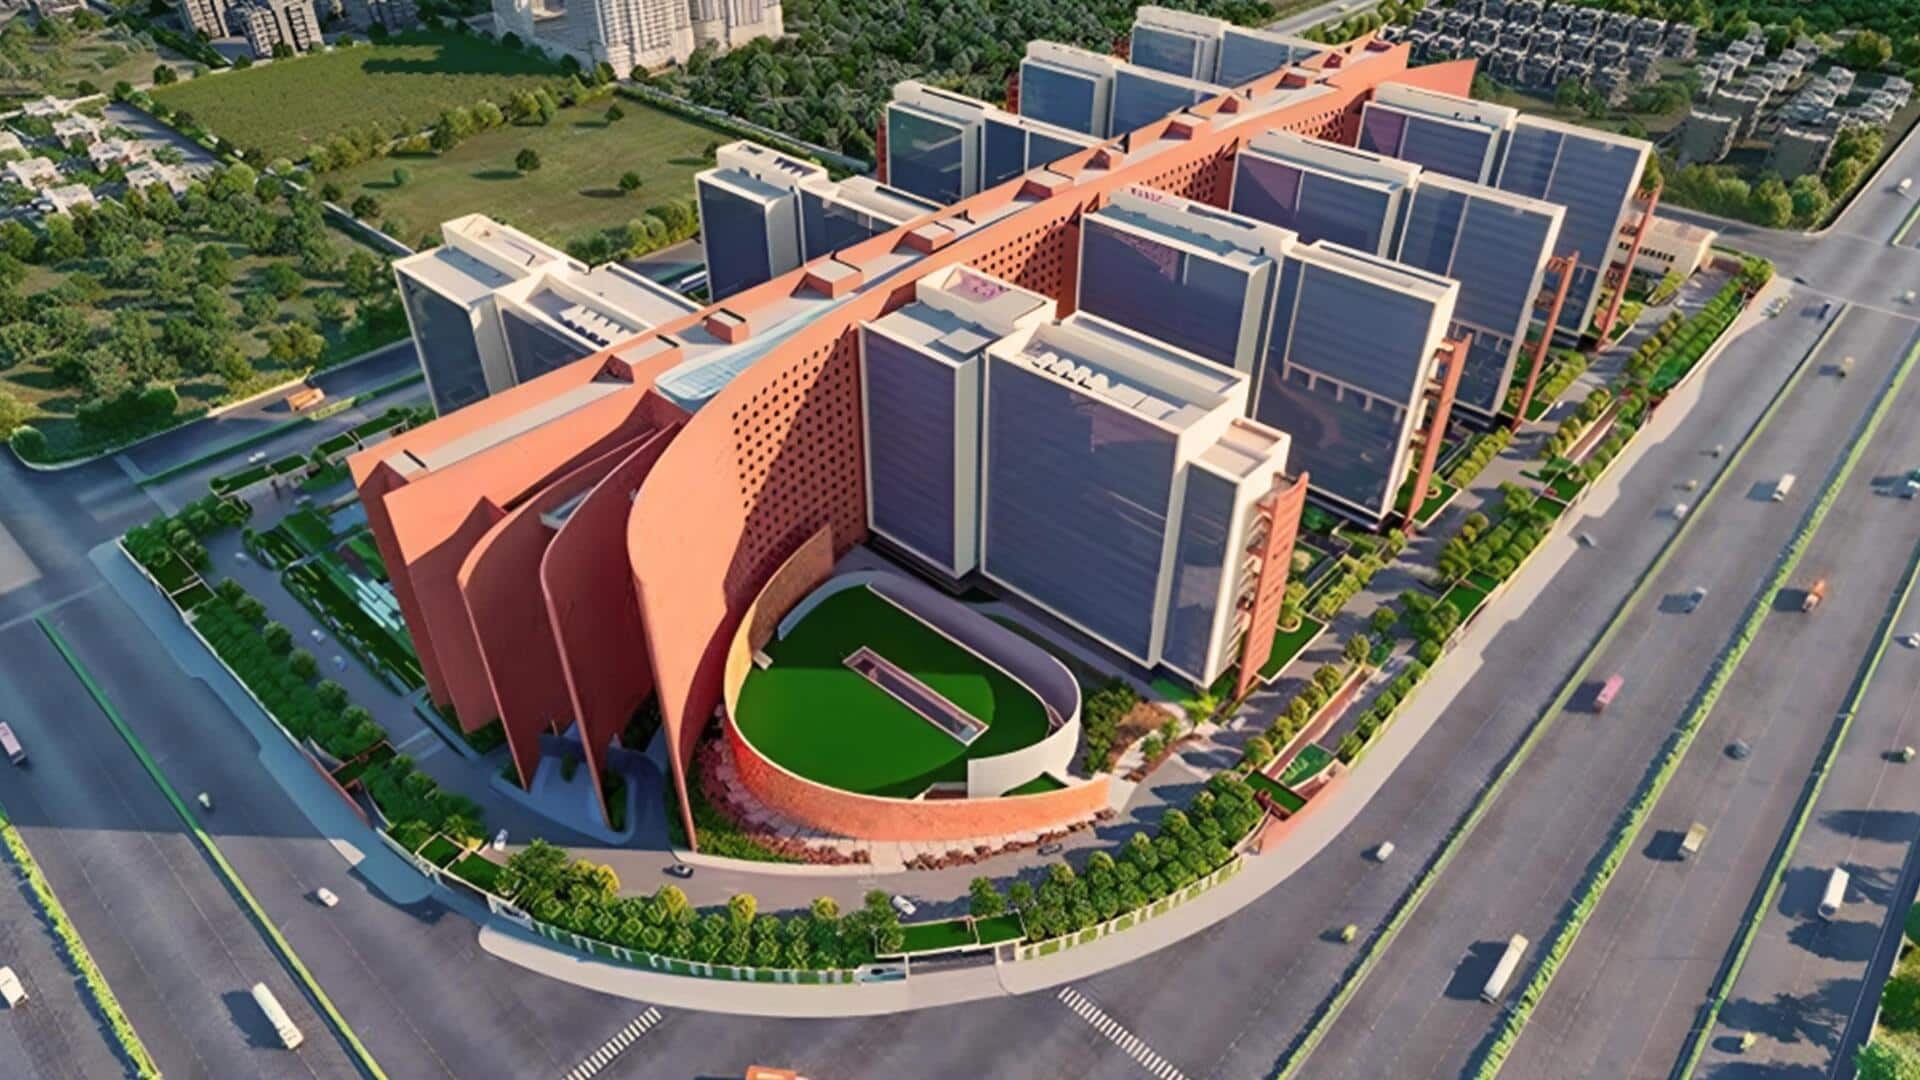 प्रधानमंत्री मोदी दुनिया की सबसे बड़ी व्यावसायिक इमारत 'सूरत डायमंड बोर्स' का करेंगे उद्घाटन, जानिए खासियत